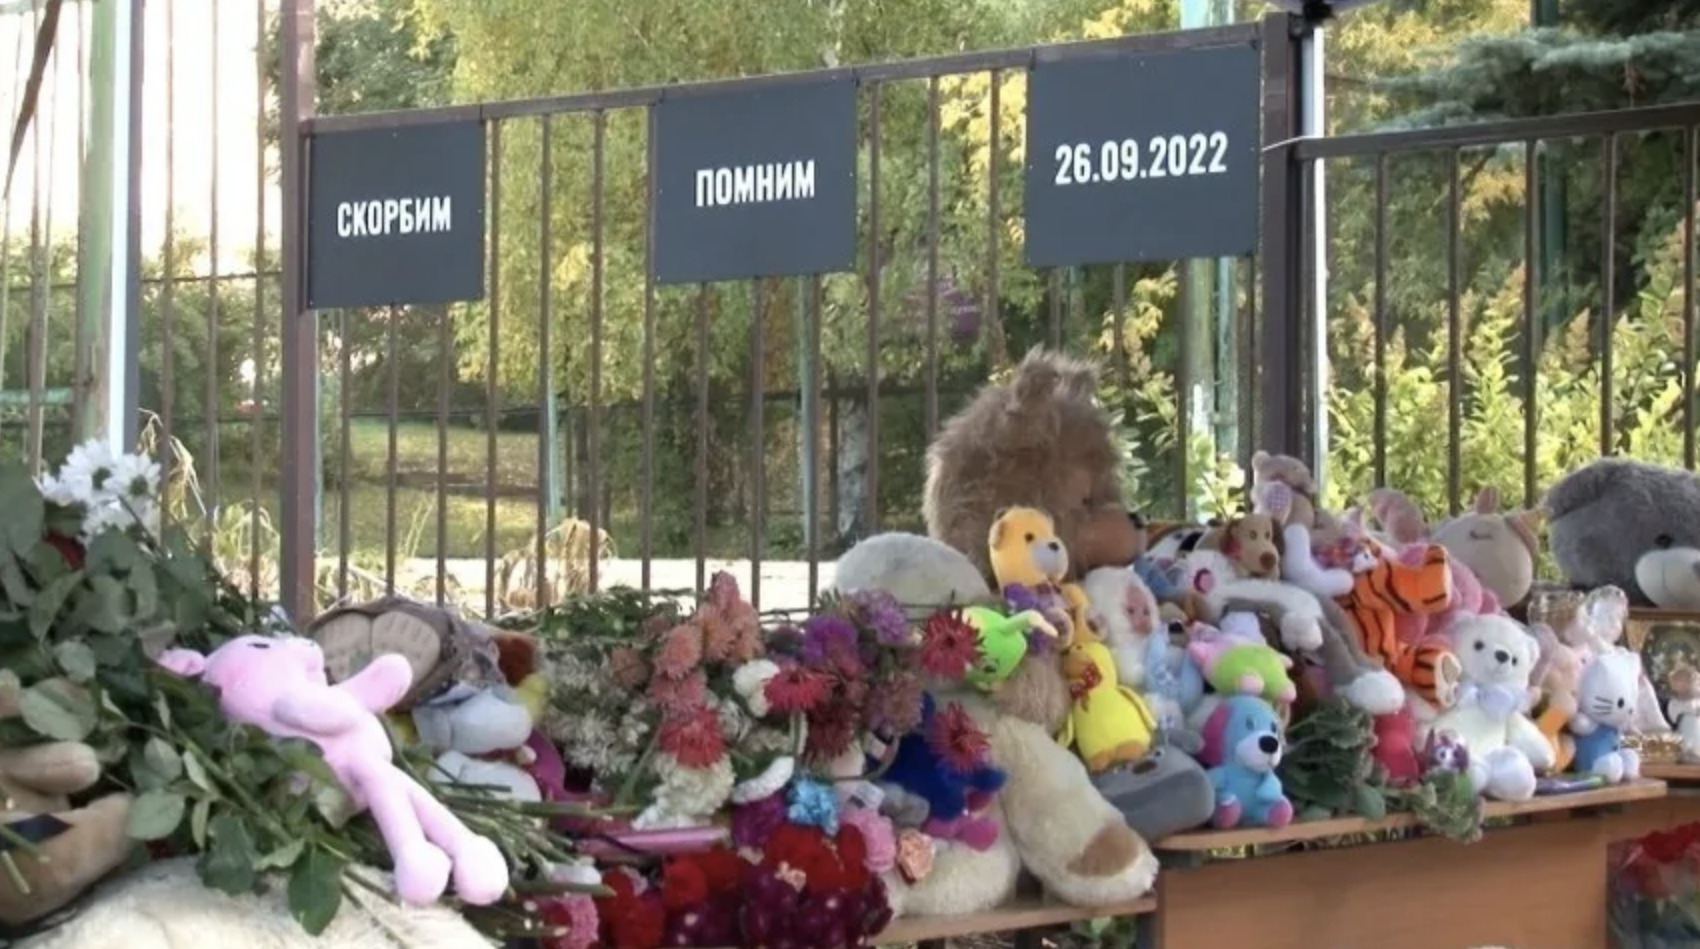 Верните детские сердца: как учителя спасали школьников от расстрела в Ижевске